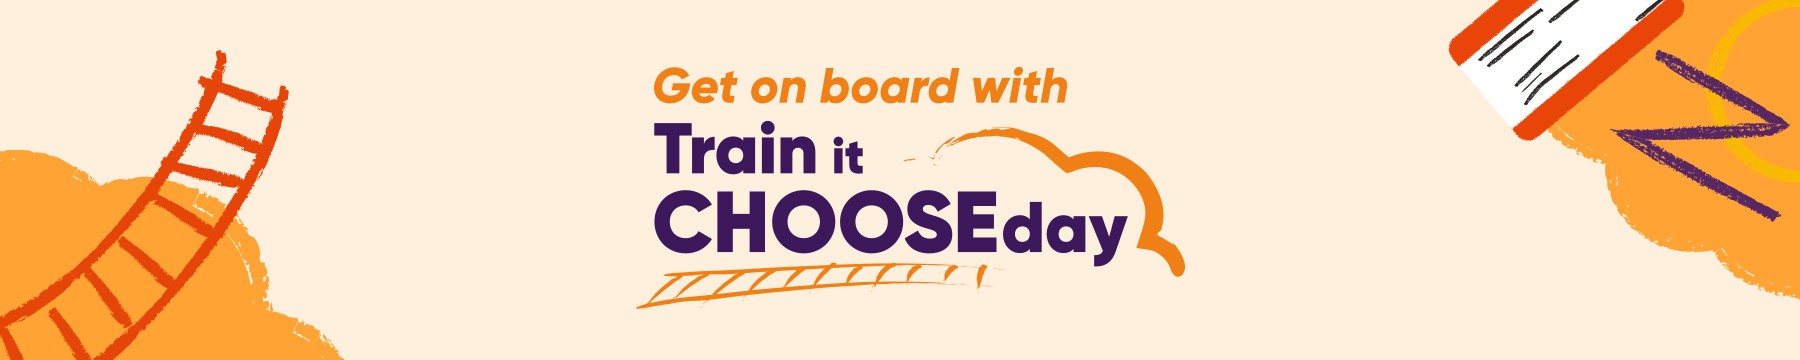 Get on Board with Train it Chooseday